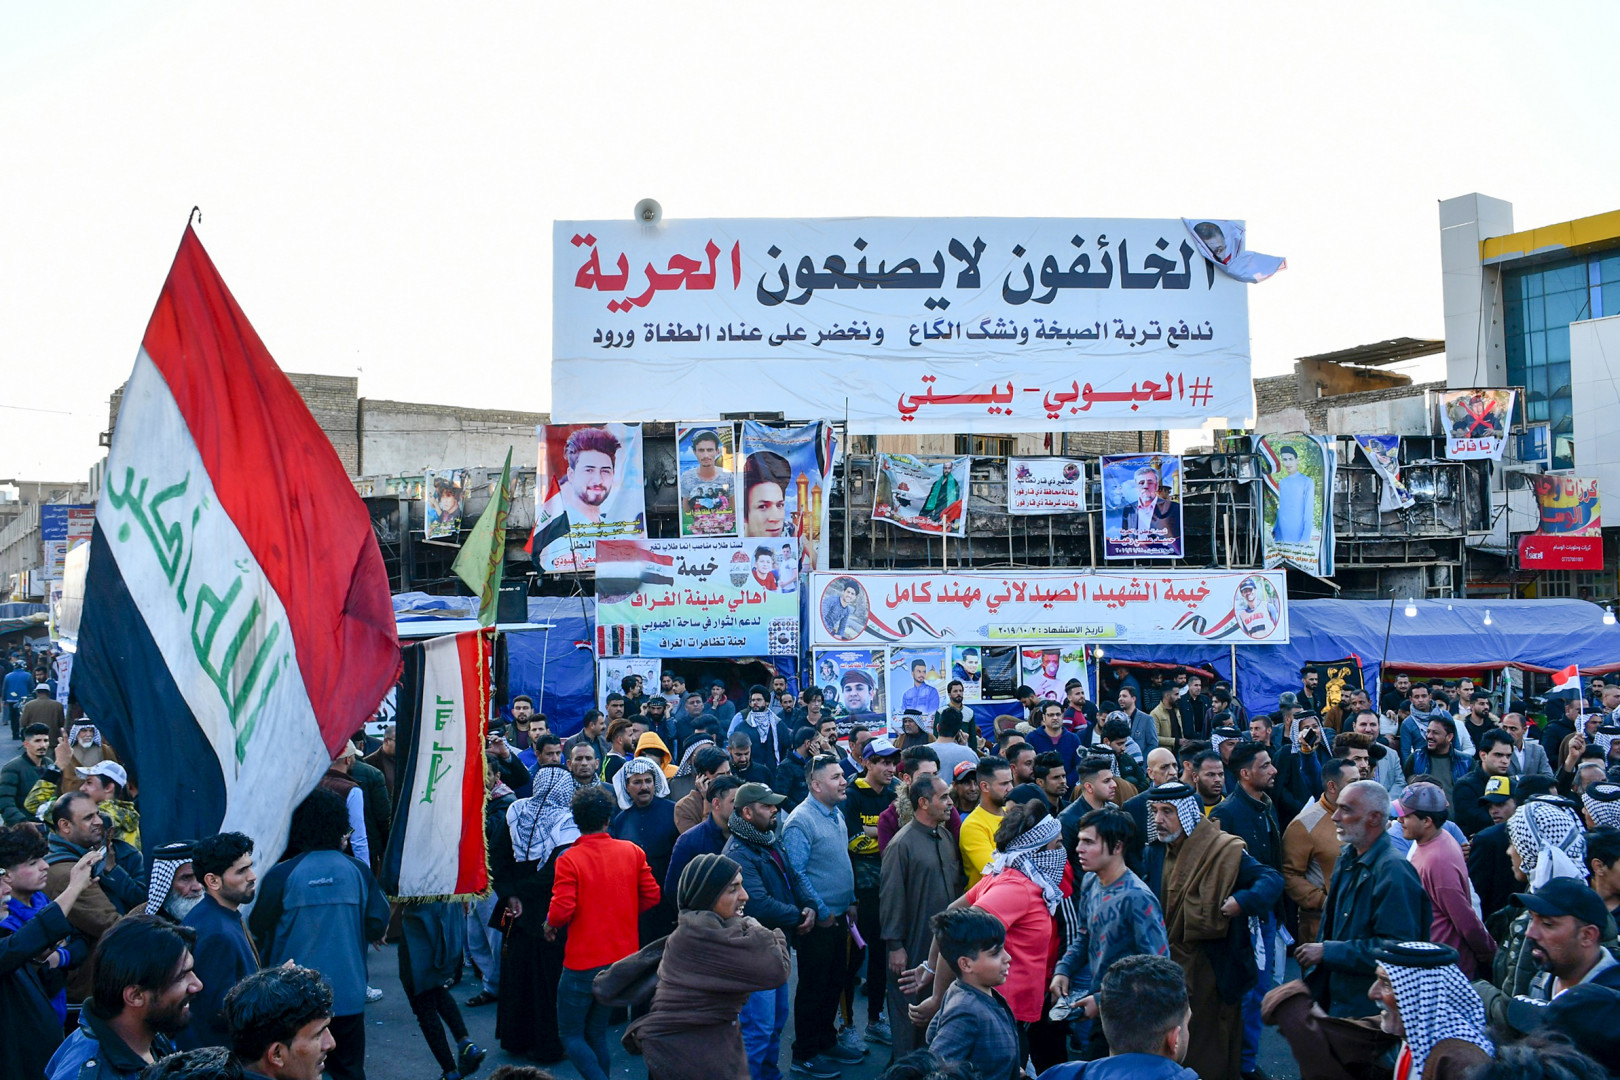 مطالب معتصمي الناصرية: رفض التفاوض مع الحكومة ومحاسبة المسؤولين عن أحداث "الجمعة"